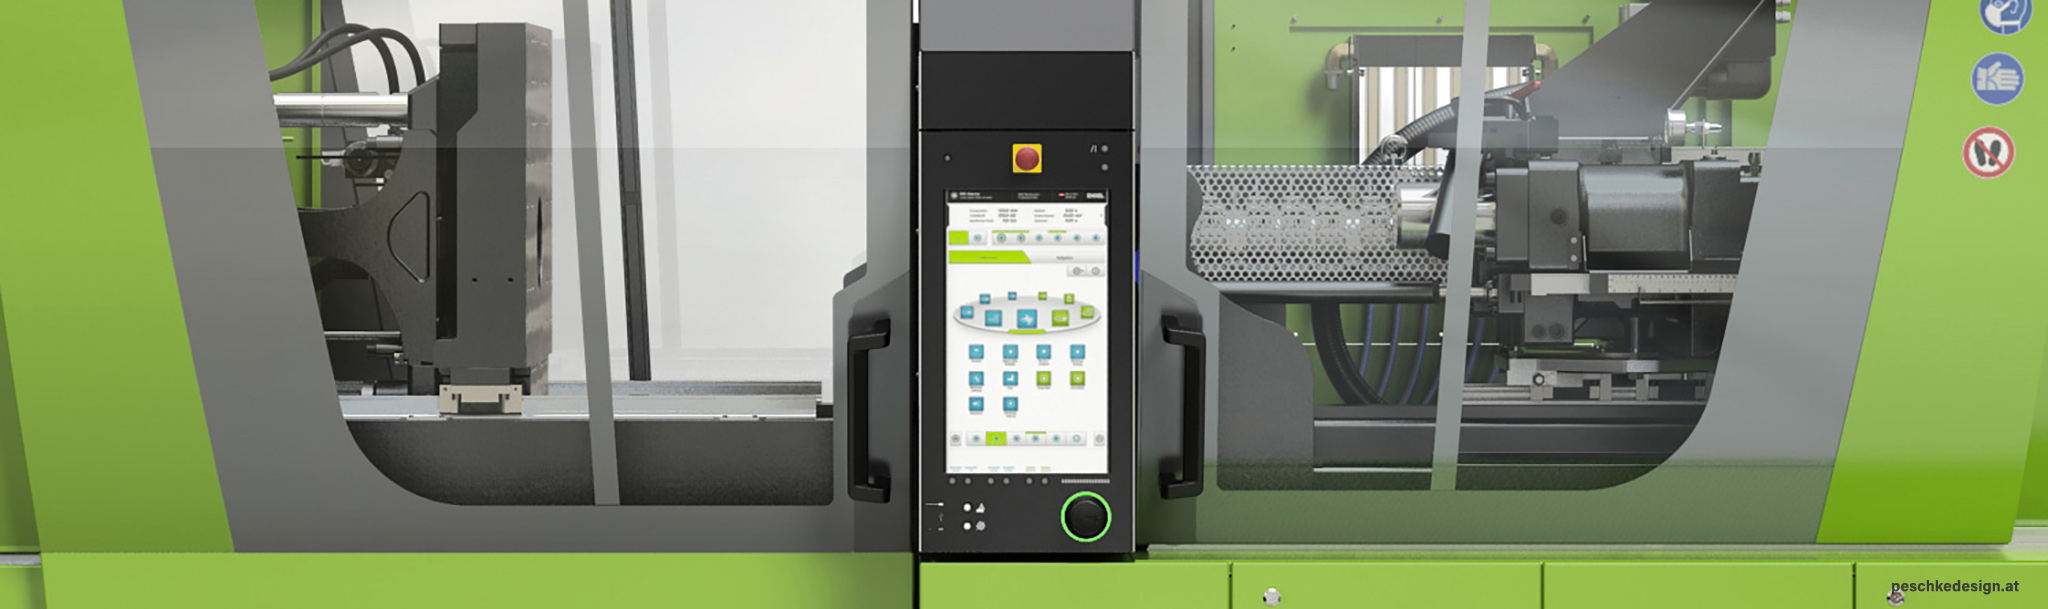 The HMI integrates seamlessly into the machine design.